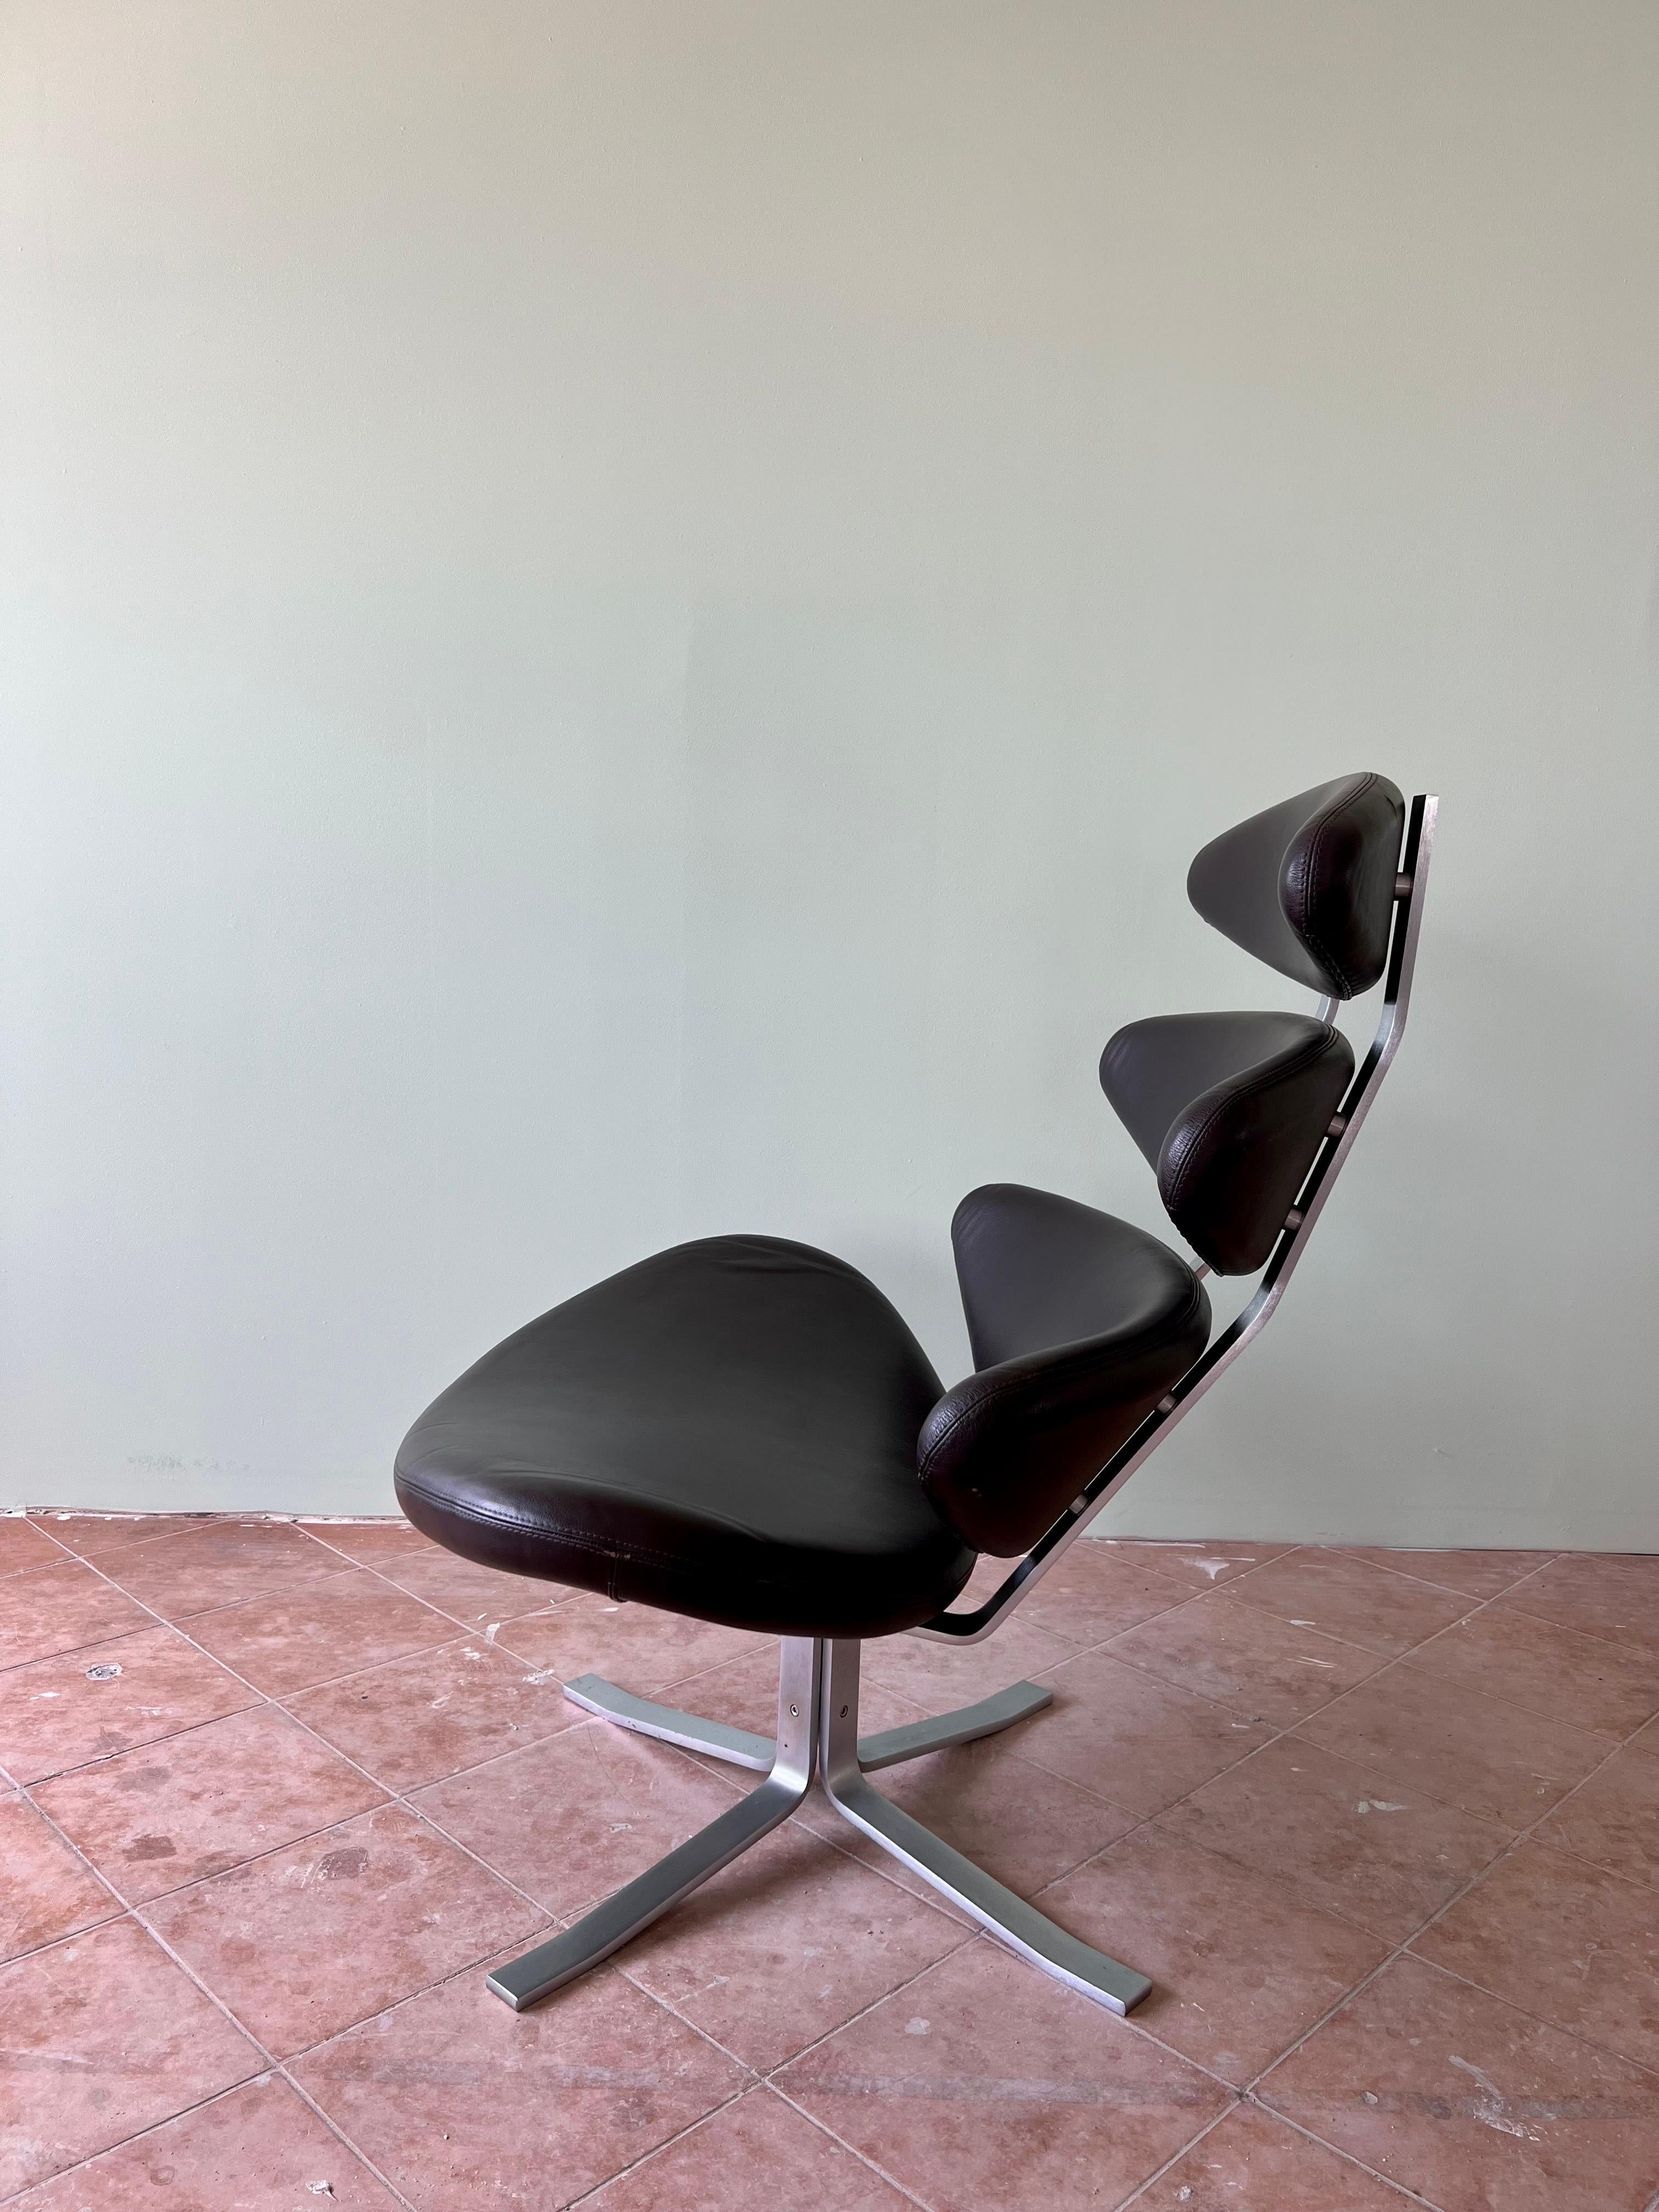 Lorsque Poul M-One a créé Corona en 1964, la chaise a connu un succès évident. Corona était léger mais avait une gravité sculpturale qui ne s'oublie pas facilement. Cette combinaison a fait de Corona une star dans d'innombrables films, séries de